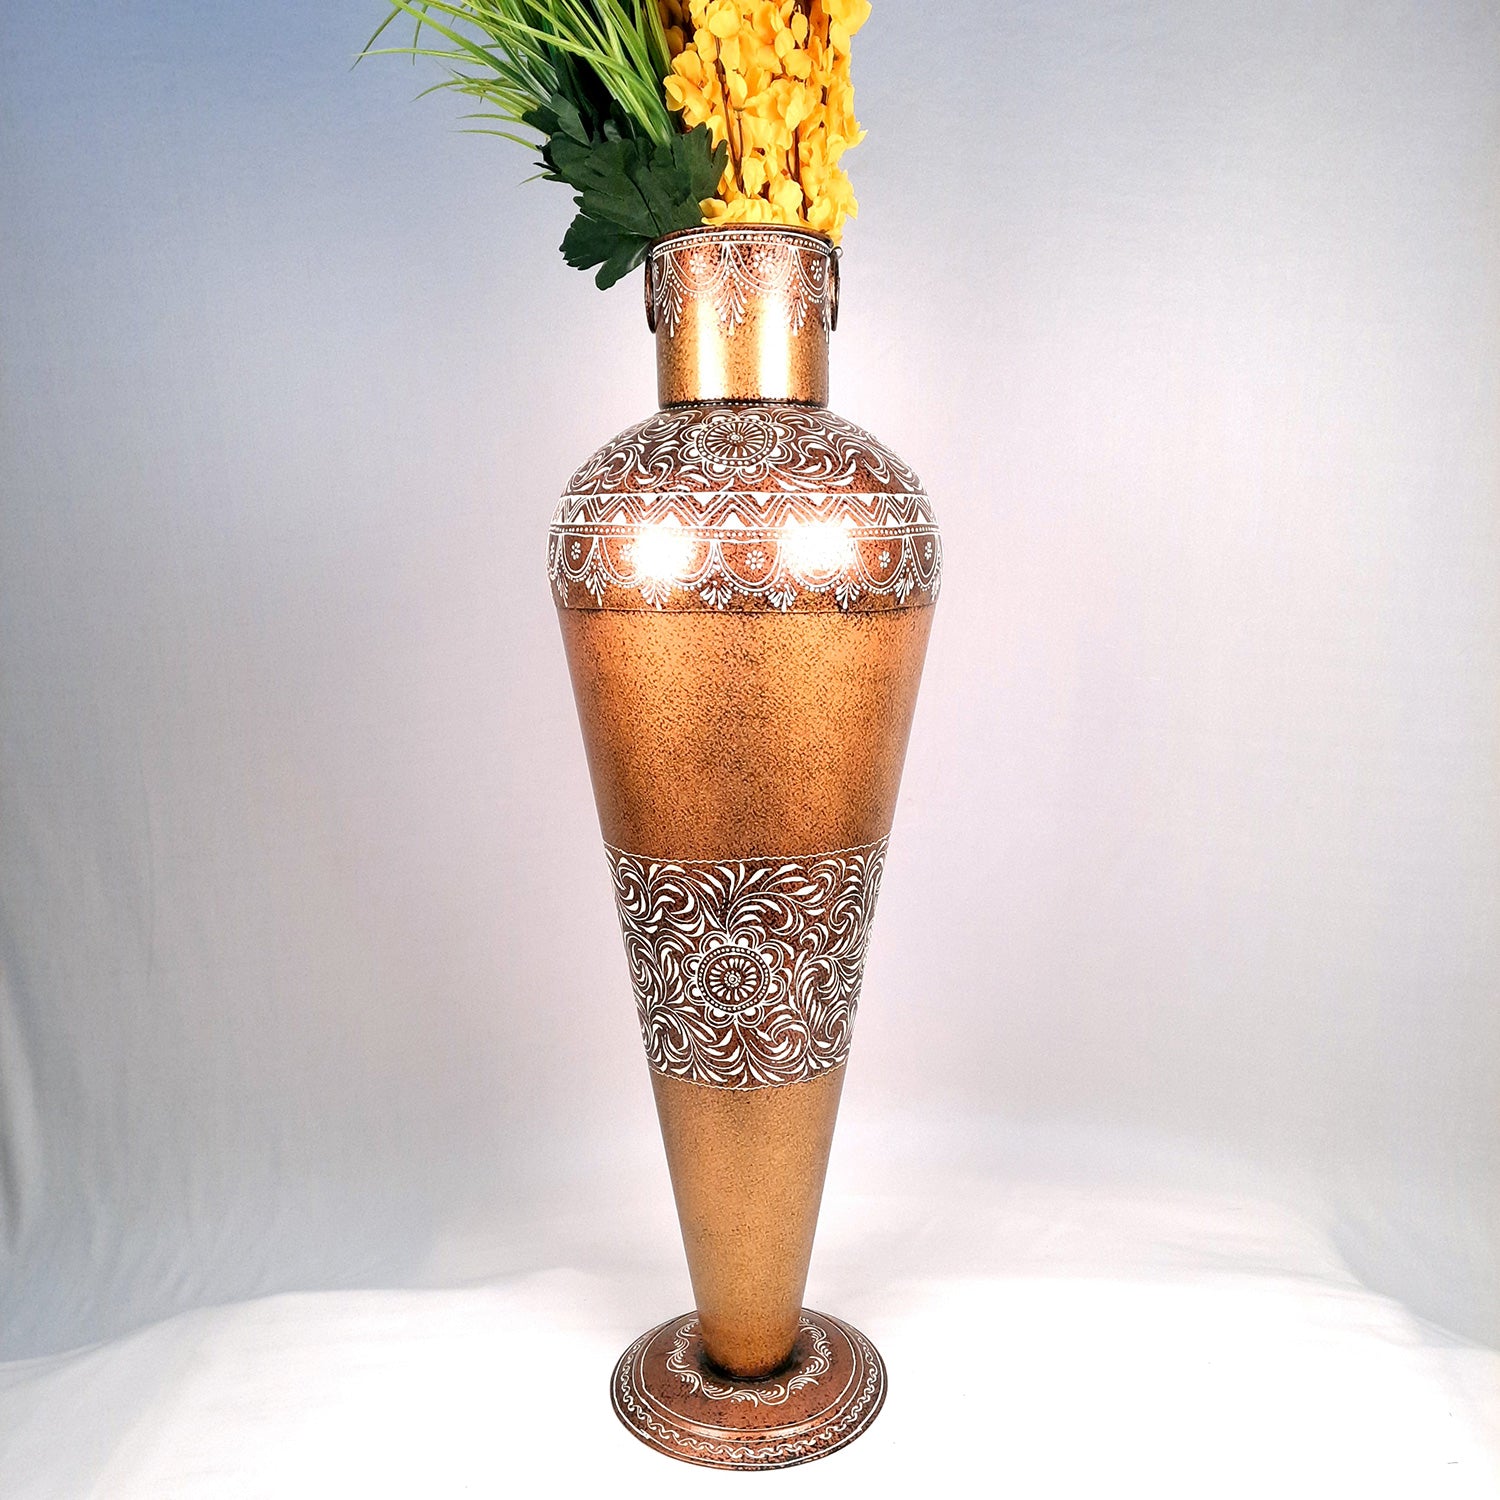 lower Vase for Corner Decoration | Big Flower Pot - for Home, Living Room, Hallway, Entrance Decor - 36 Inch - Apkamart